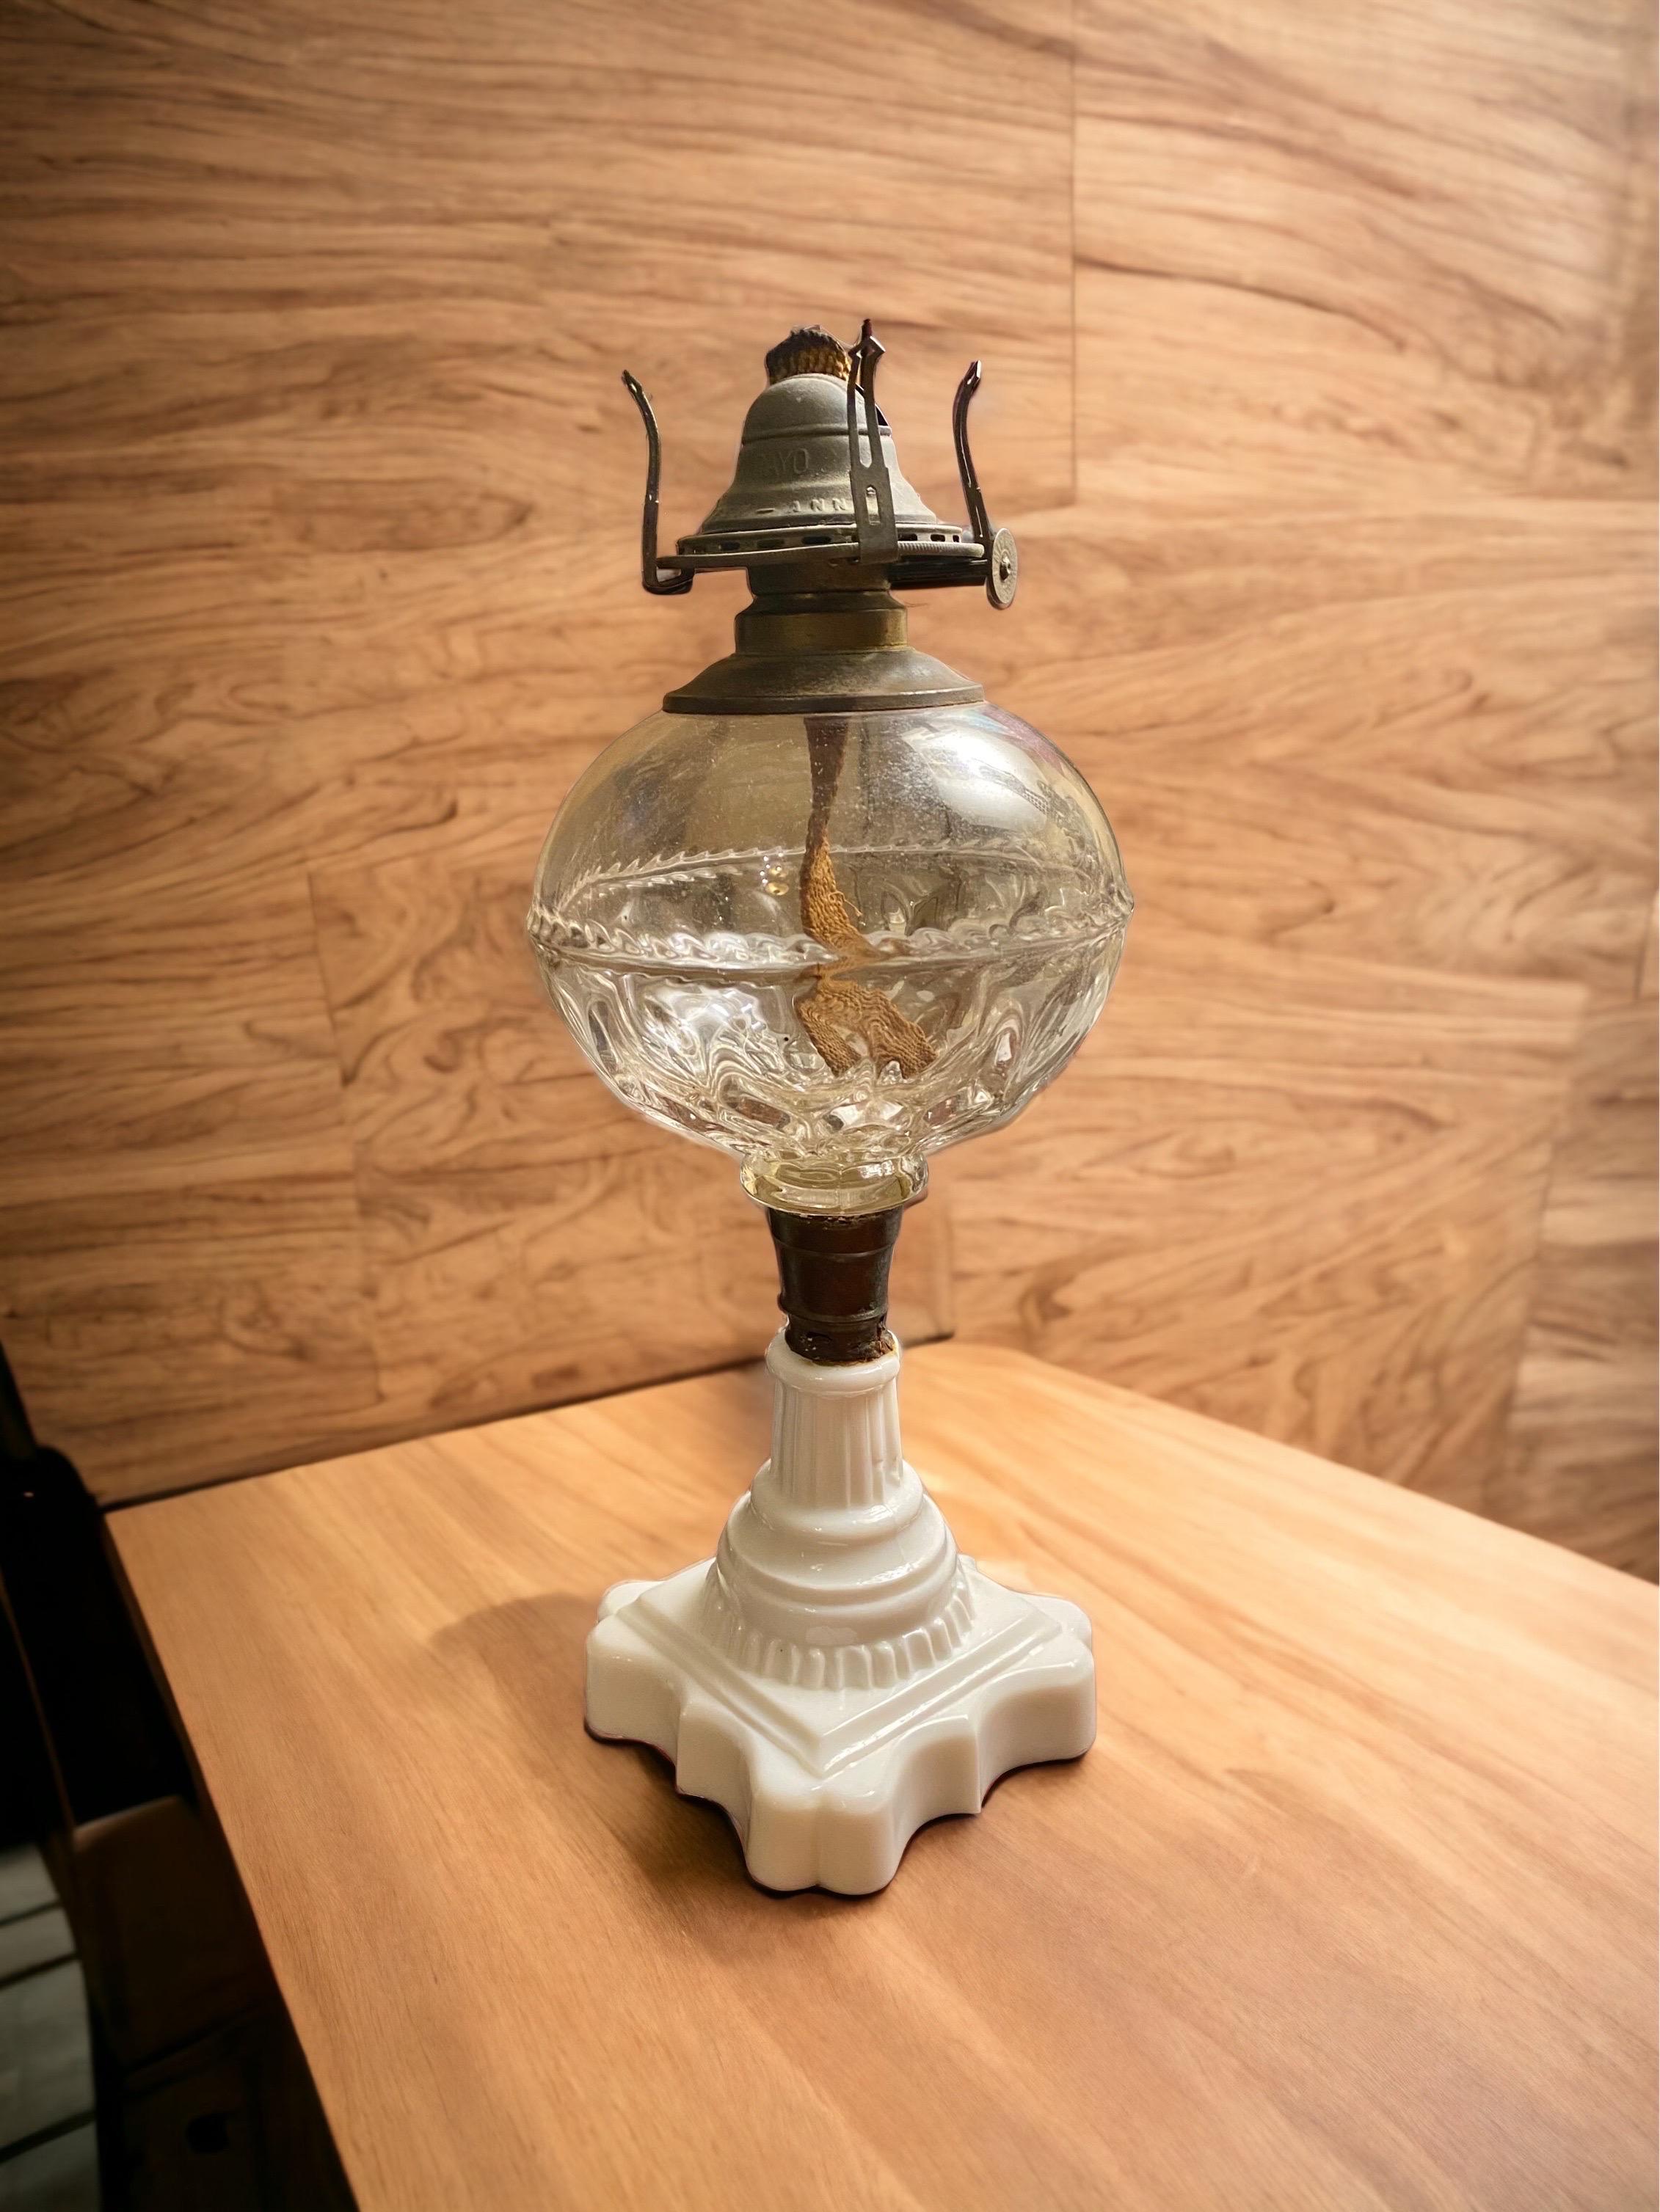 Amerikanische Walöl-Lampe aus dem 19. Jahrhundert.
Farbloser, kugelförmiger EAPG-Glasfont, hochgradig bleihaltiges, opalisierendes, weißes Milchglas, quadratischer Sockel mit verjüngtem Schaft, Messingverbinder,
Nr. 1 feiner